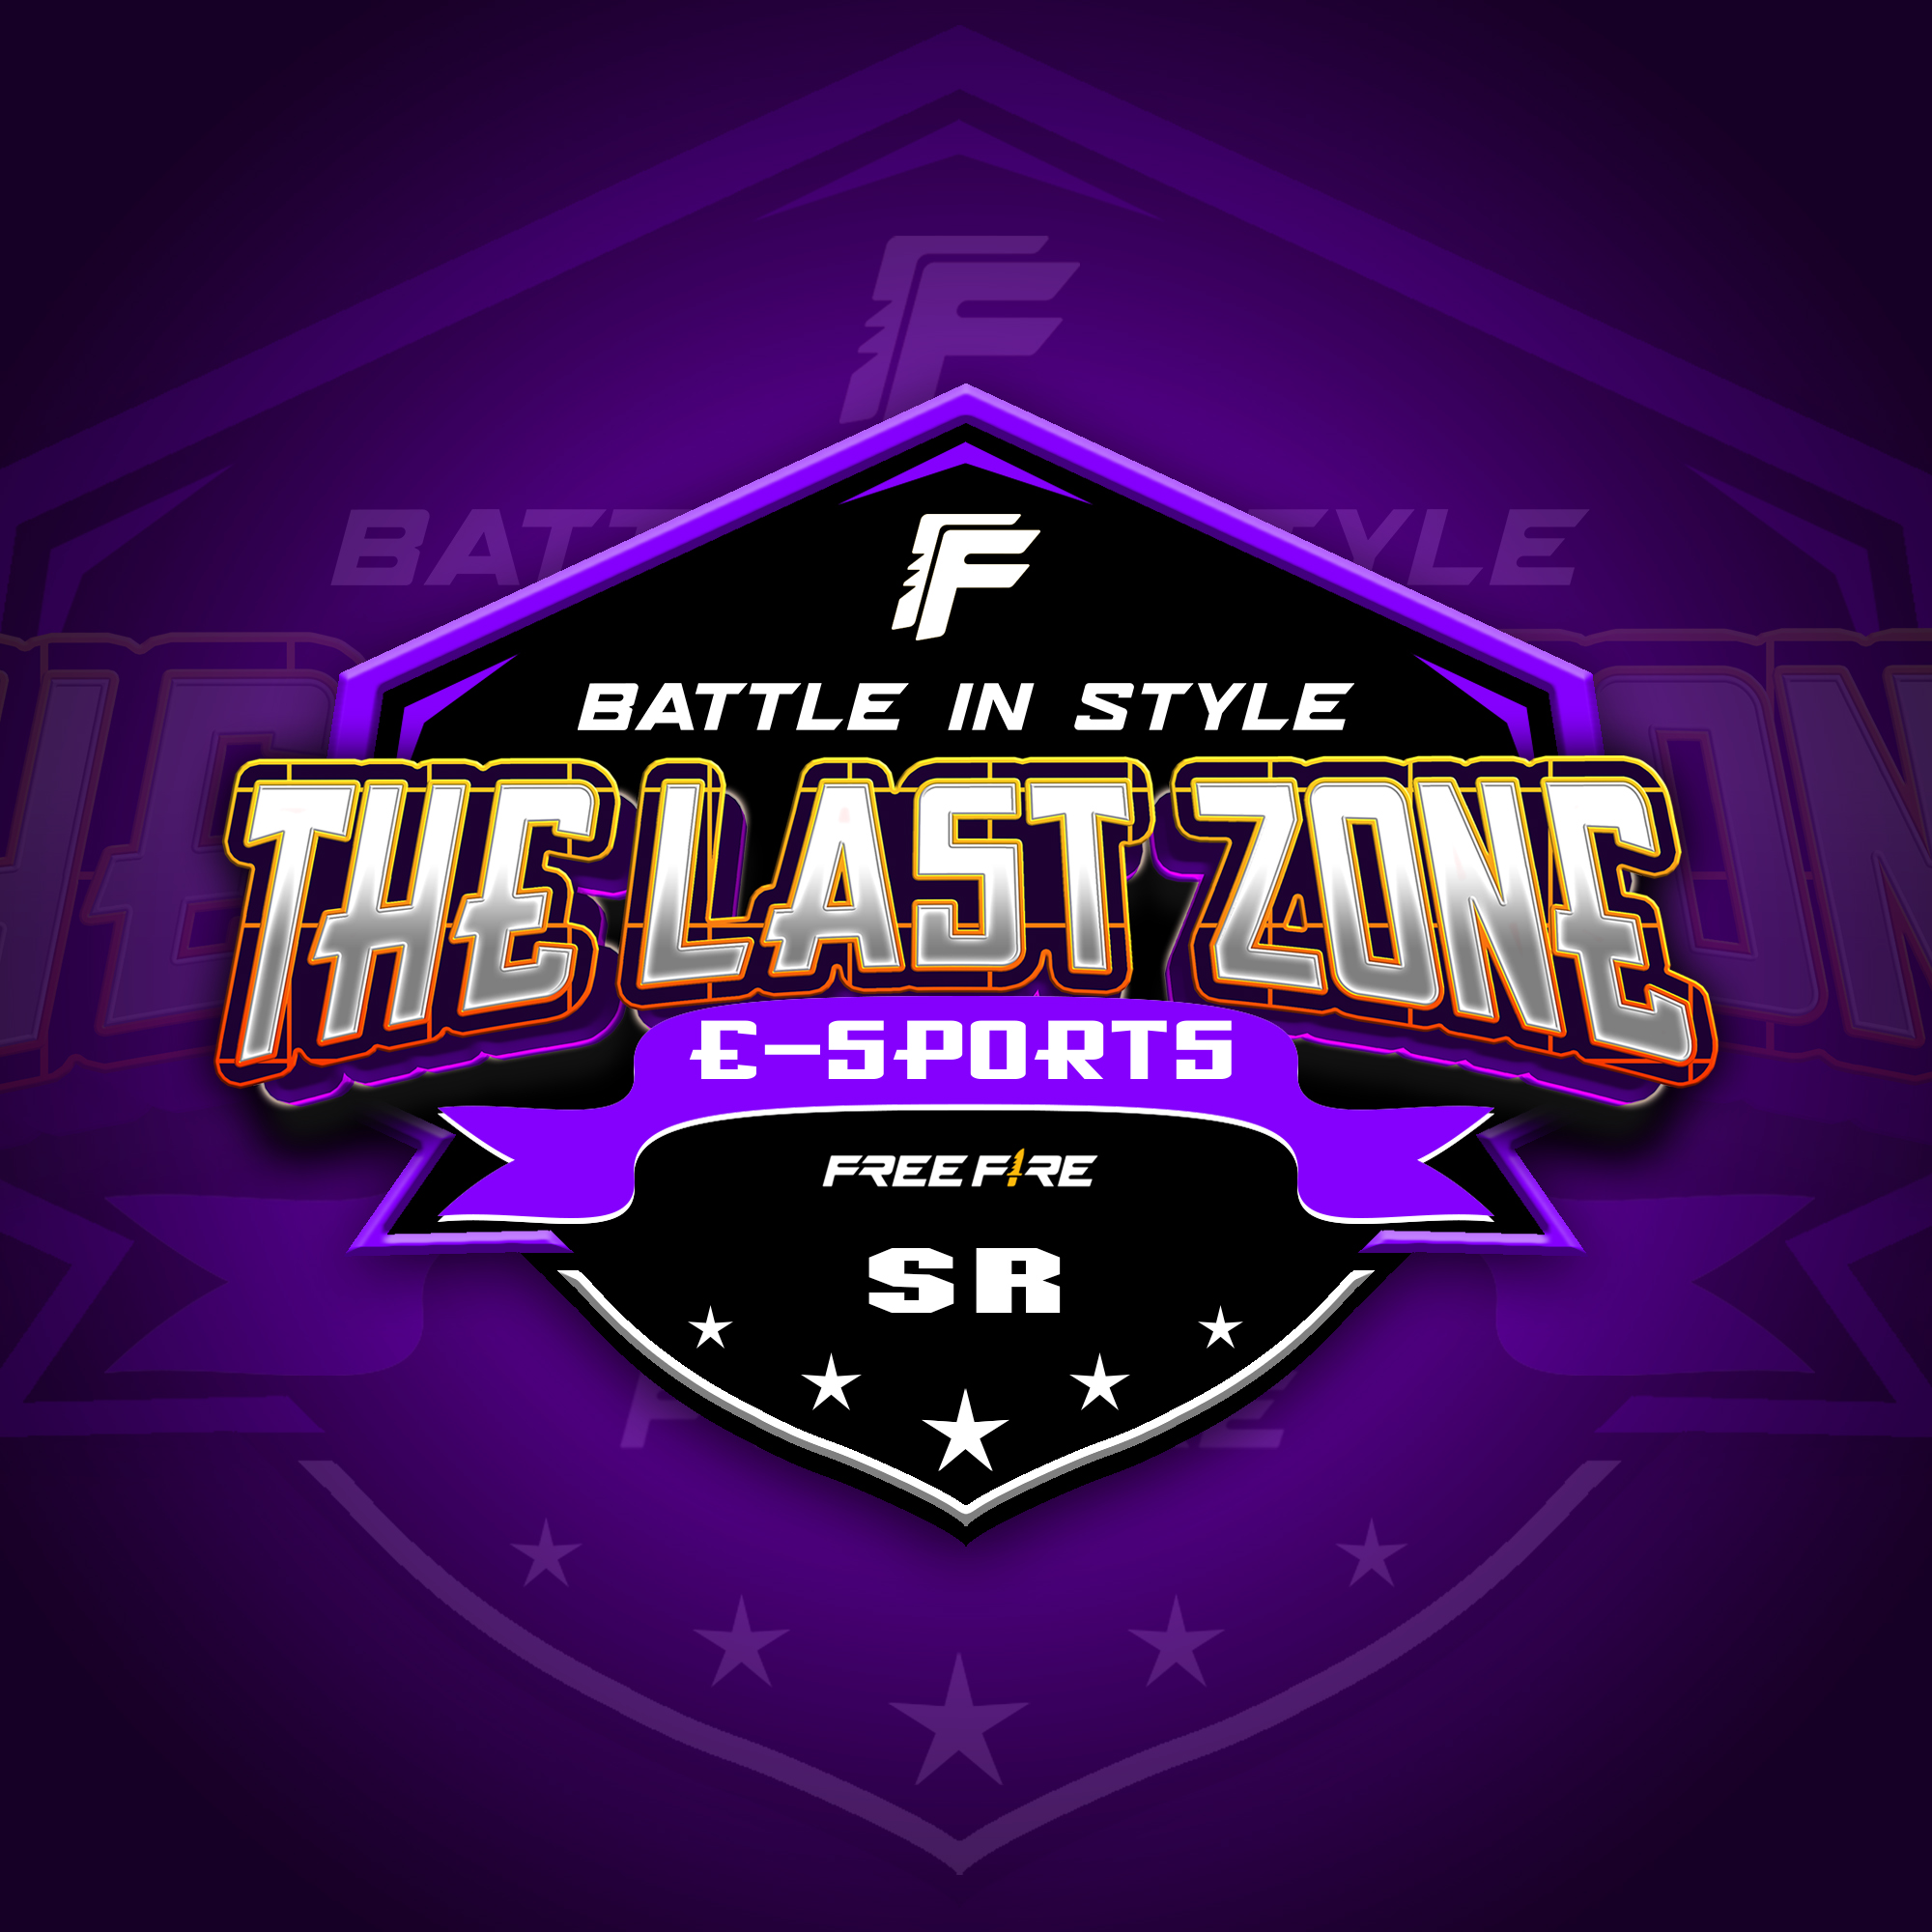 The Last Zone